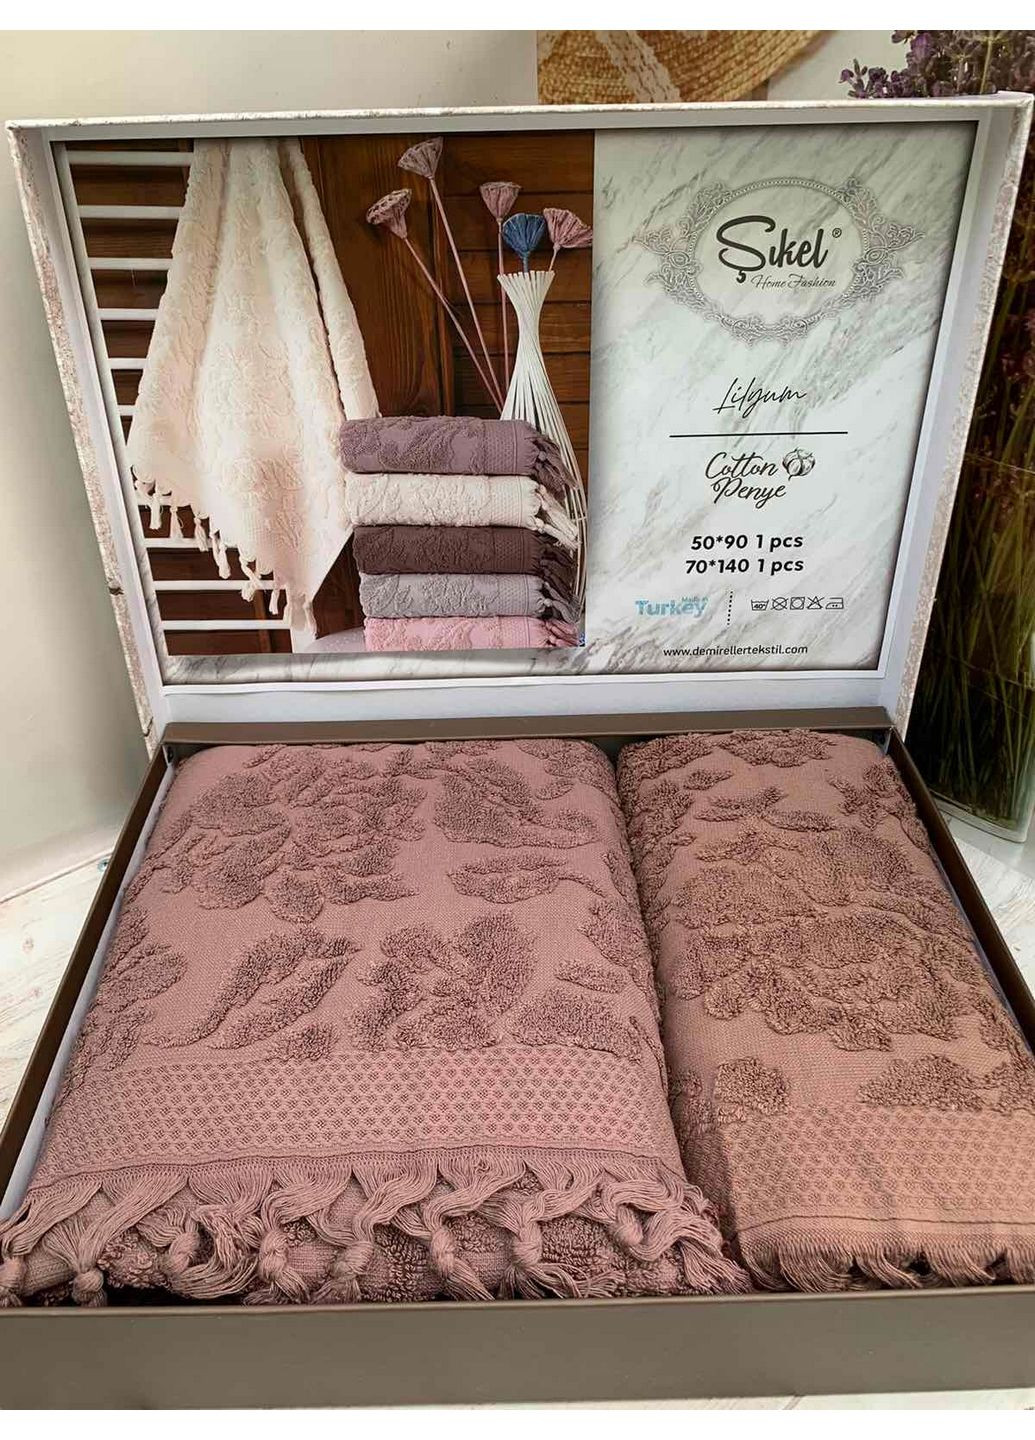 Sikel комплект полотенец комбинированный производство - Турция